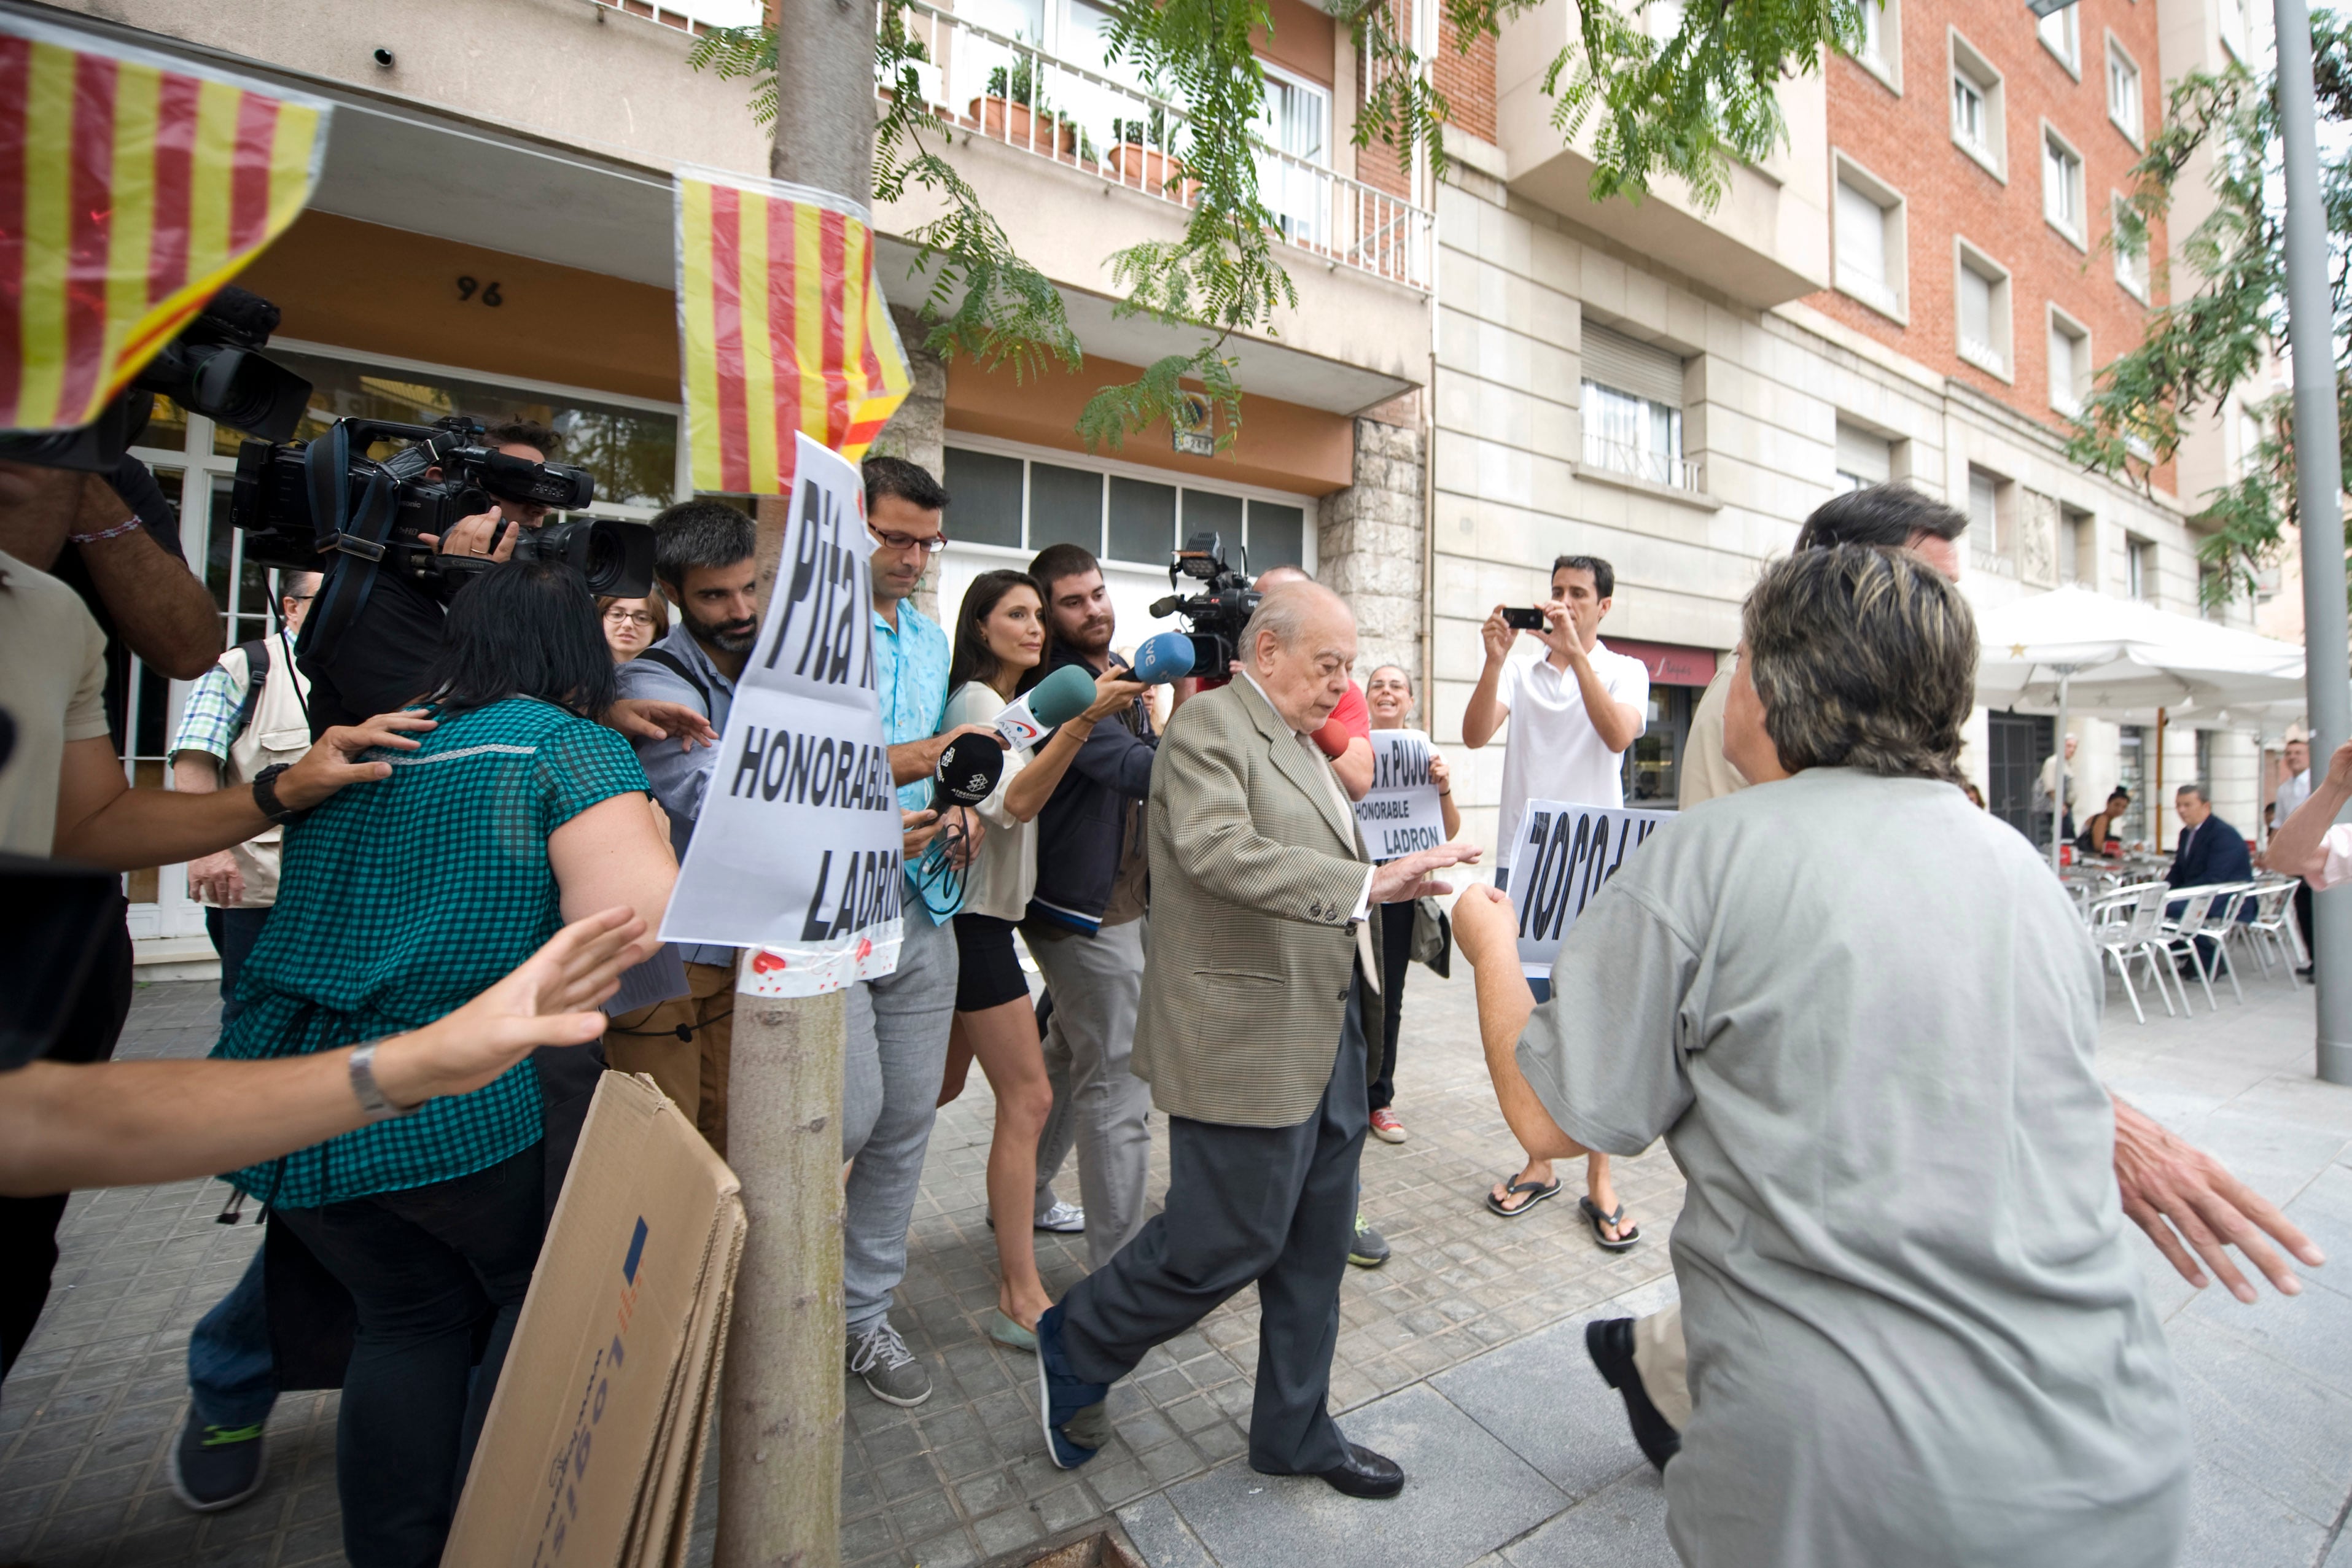 Jordi Pujol, expresidente de la Generalitat de Cataluña, sale de su residencia rodeado de personas con carteles en los que le llaman ladrón, en julio de 2014.